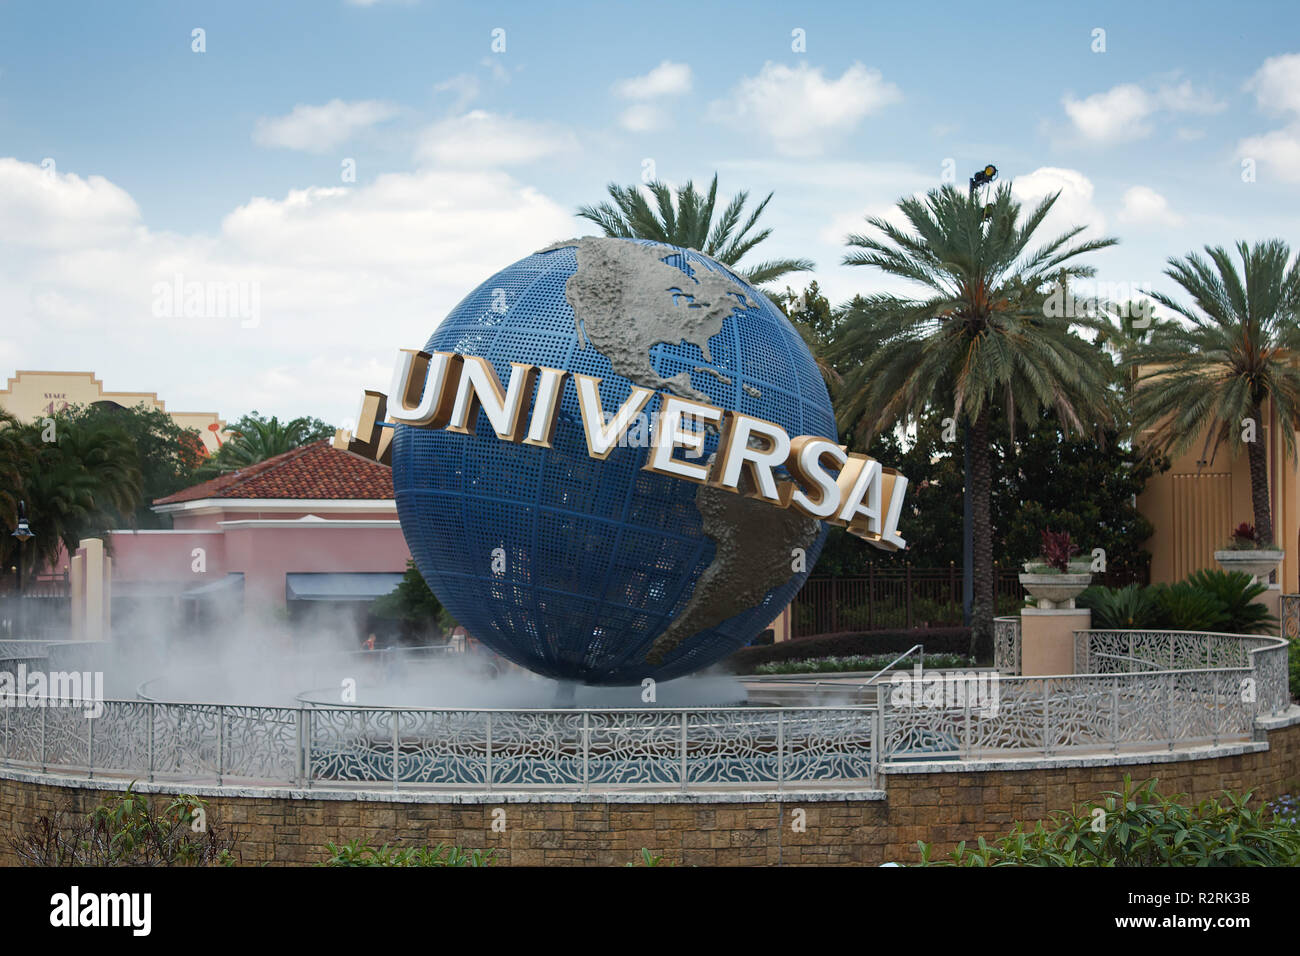 ORLANDO, FLORIDA, Stati Uniti d'America - 9 giugno 2010: Il grande rotante logo universale globe su Universal Studios è uno di Orlando i famosi parchi a tema. Foto Stock